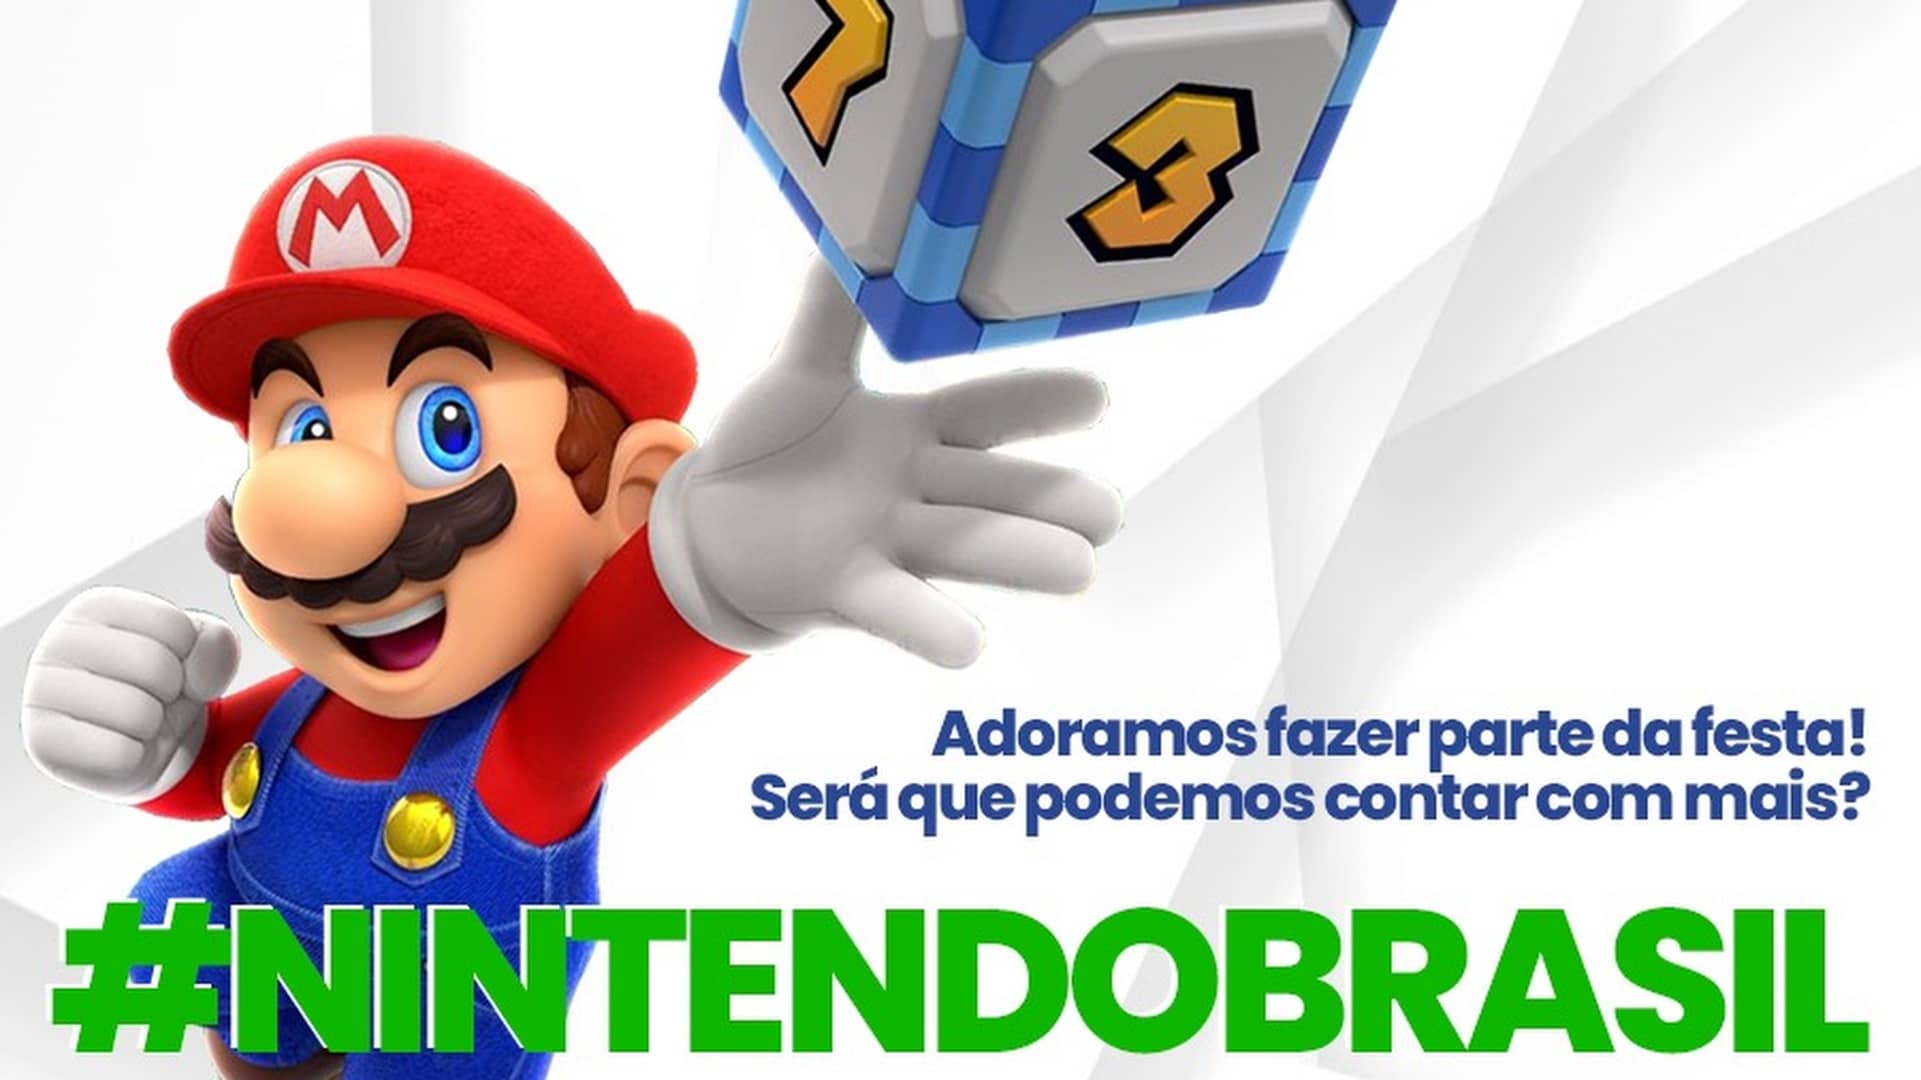 Fans reclaman a Nintendo la inclusión del portugués brasileño como idioma en sus videojuegos para Switch